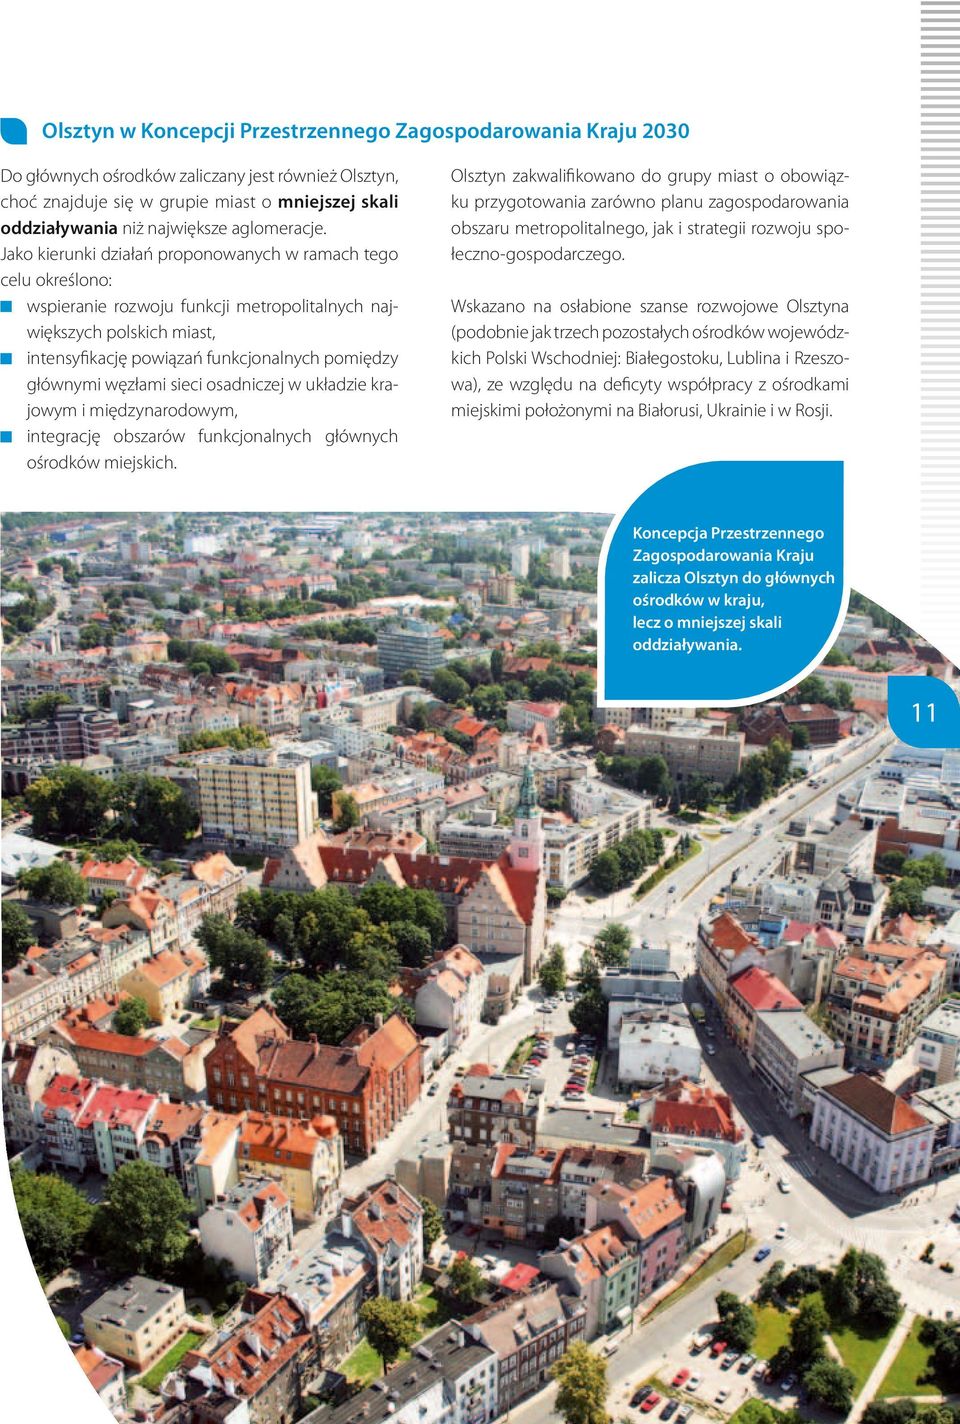 Jako kierunki działań proponowanych w ramach teo celu określono: wspieranie rozwoju funkcji metropolitalnych największych polskich miast, intensyfikację powiązań funkcjonalnych pomiędzy łównymi